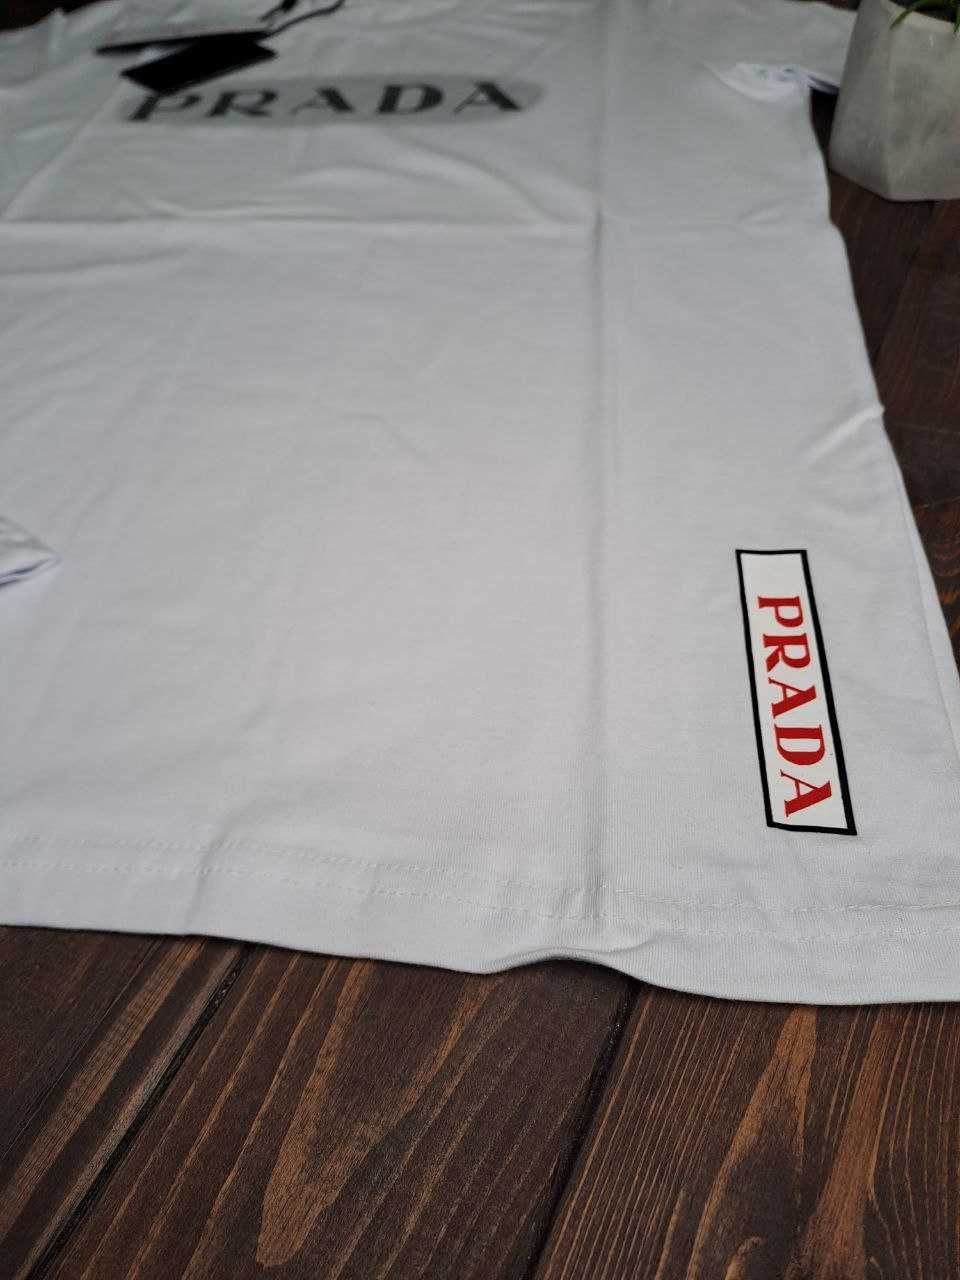 РОЗПРОДАЖ! XL (52) футболка PRADA прада поло тениска белая біла